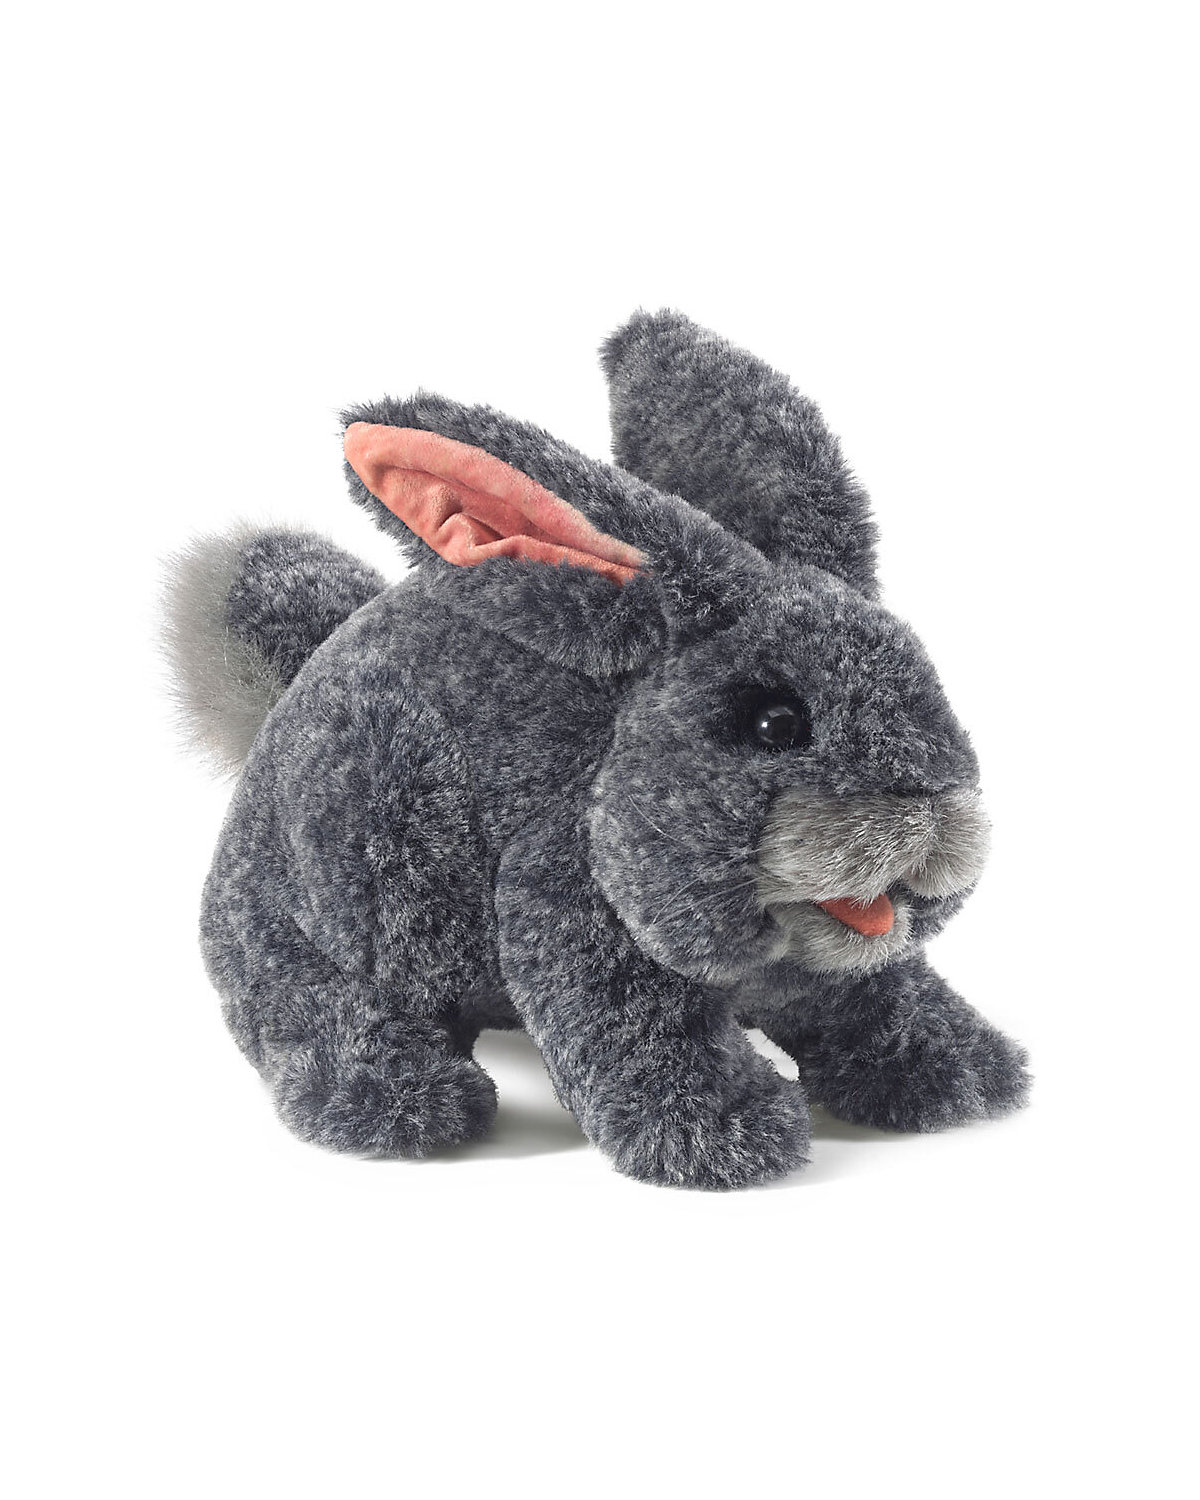 Folkmanis Handpuppe Häschen in grau / Gray Bunny Rabbit